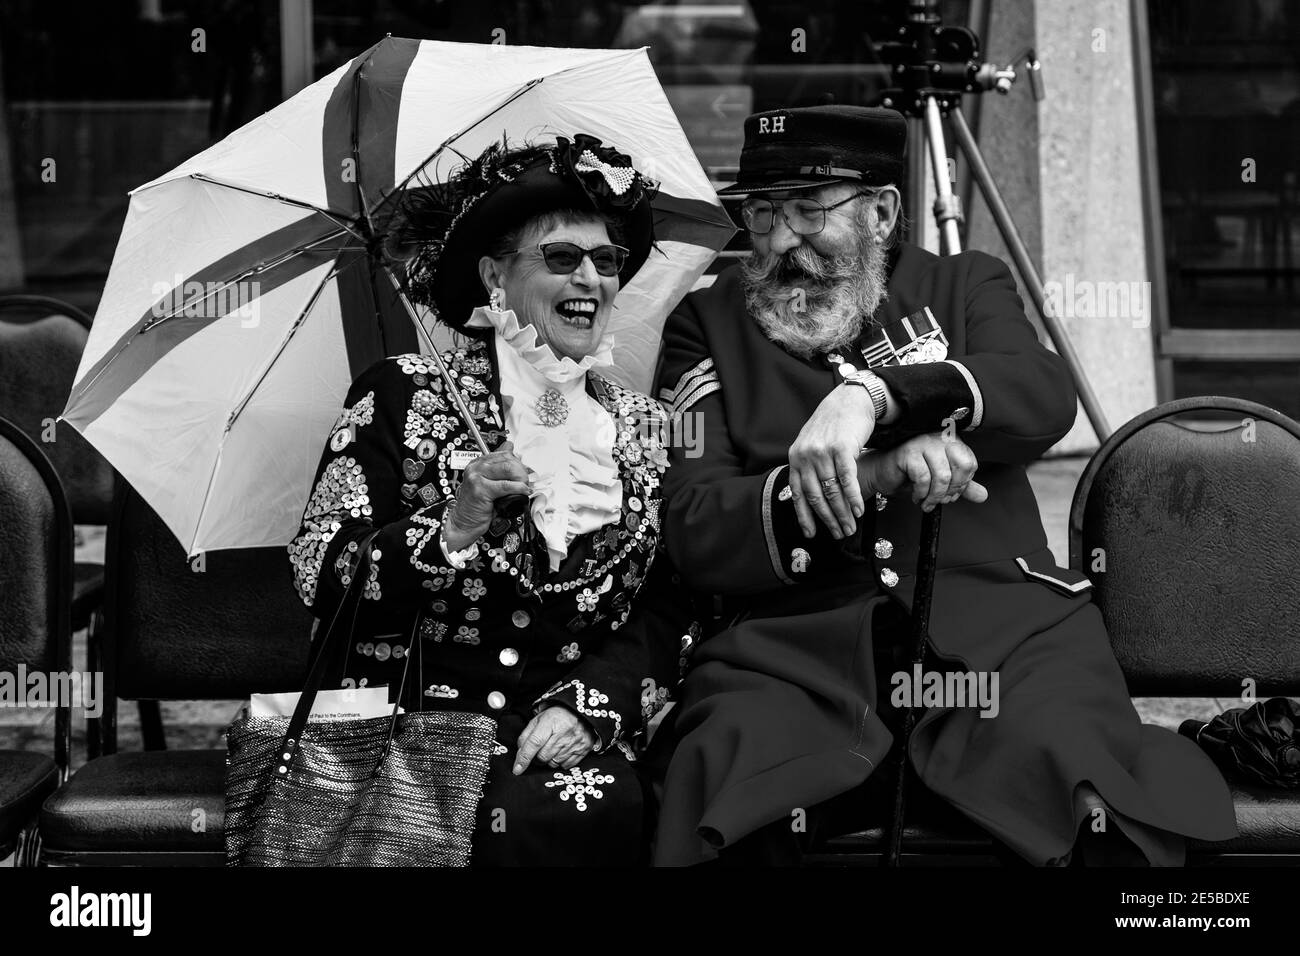 Una regina dei proli parla con un pensionato di Chelsea al festival annuale della raccolta dei re e delle regine che si tiene al Guildhall Yard, Londra, Inghilterra. Foto Stock